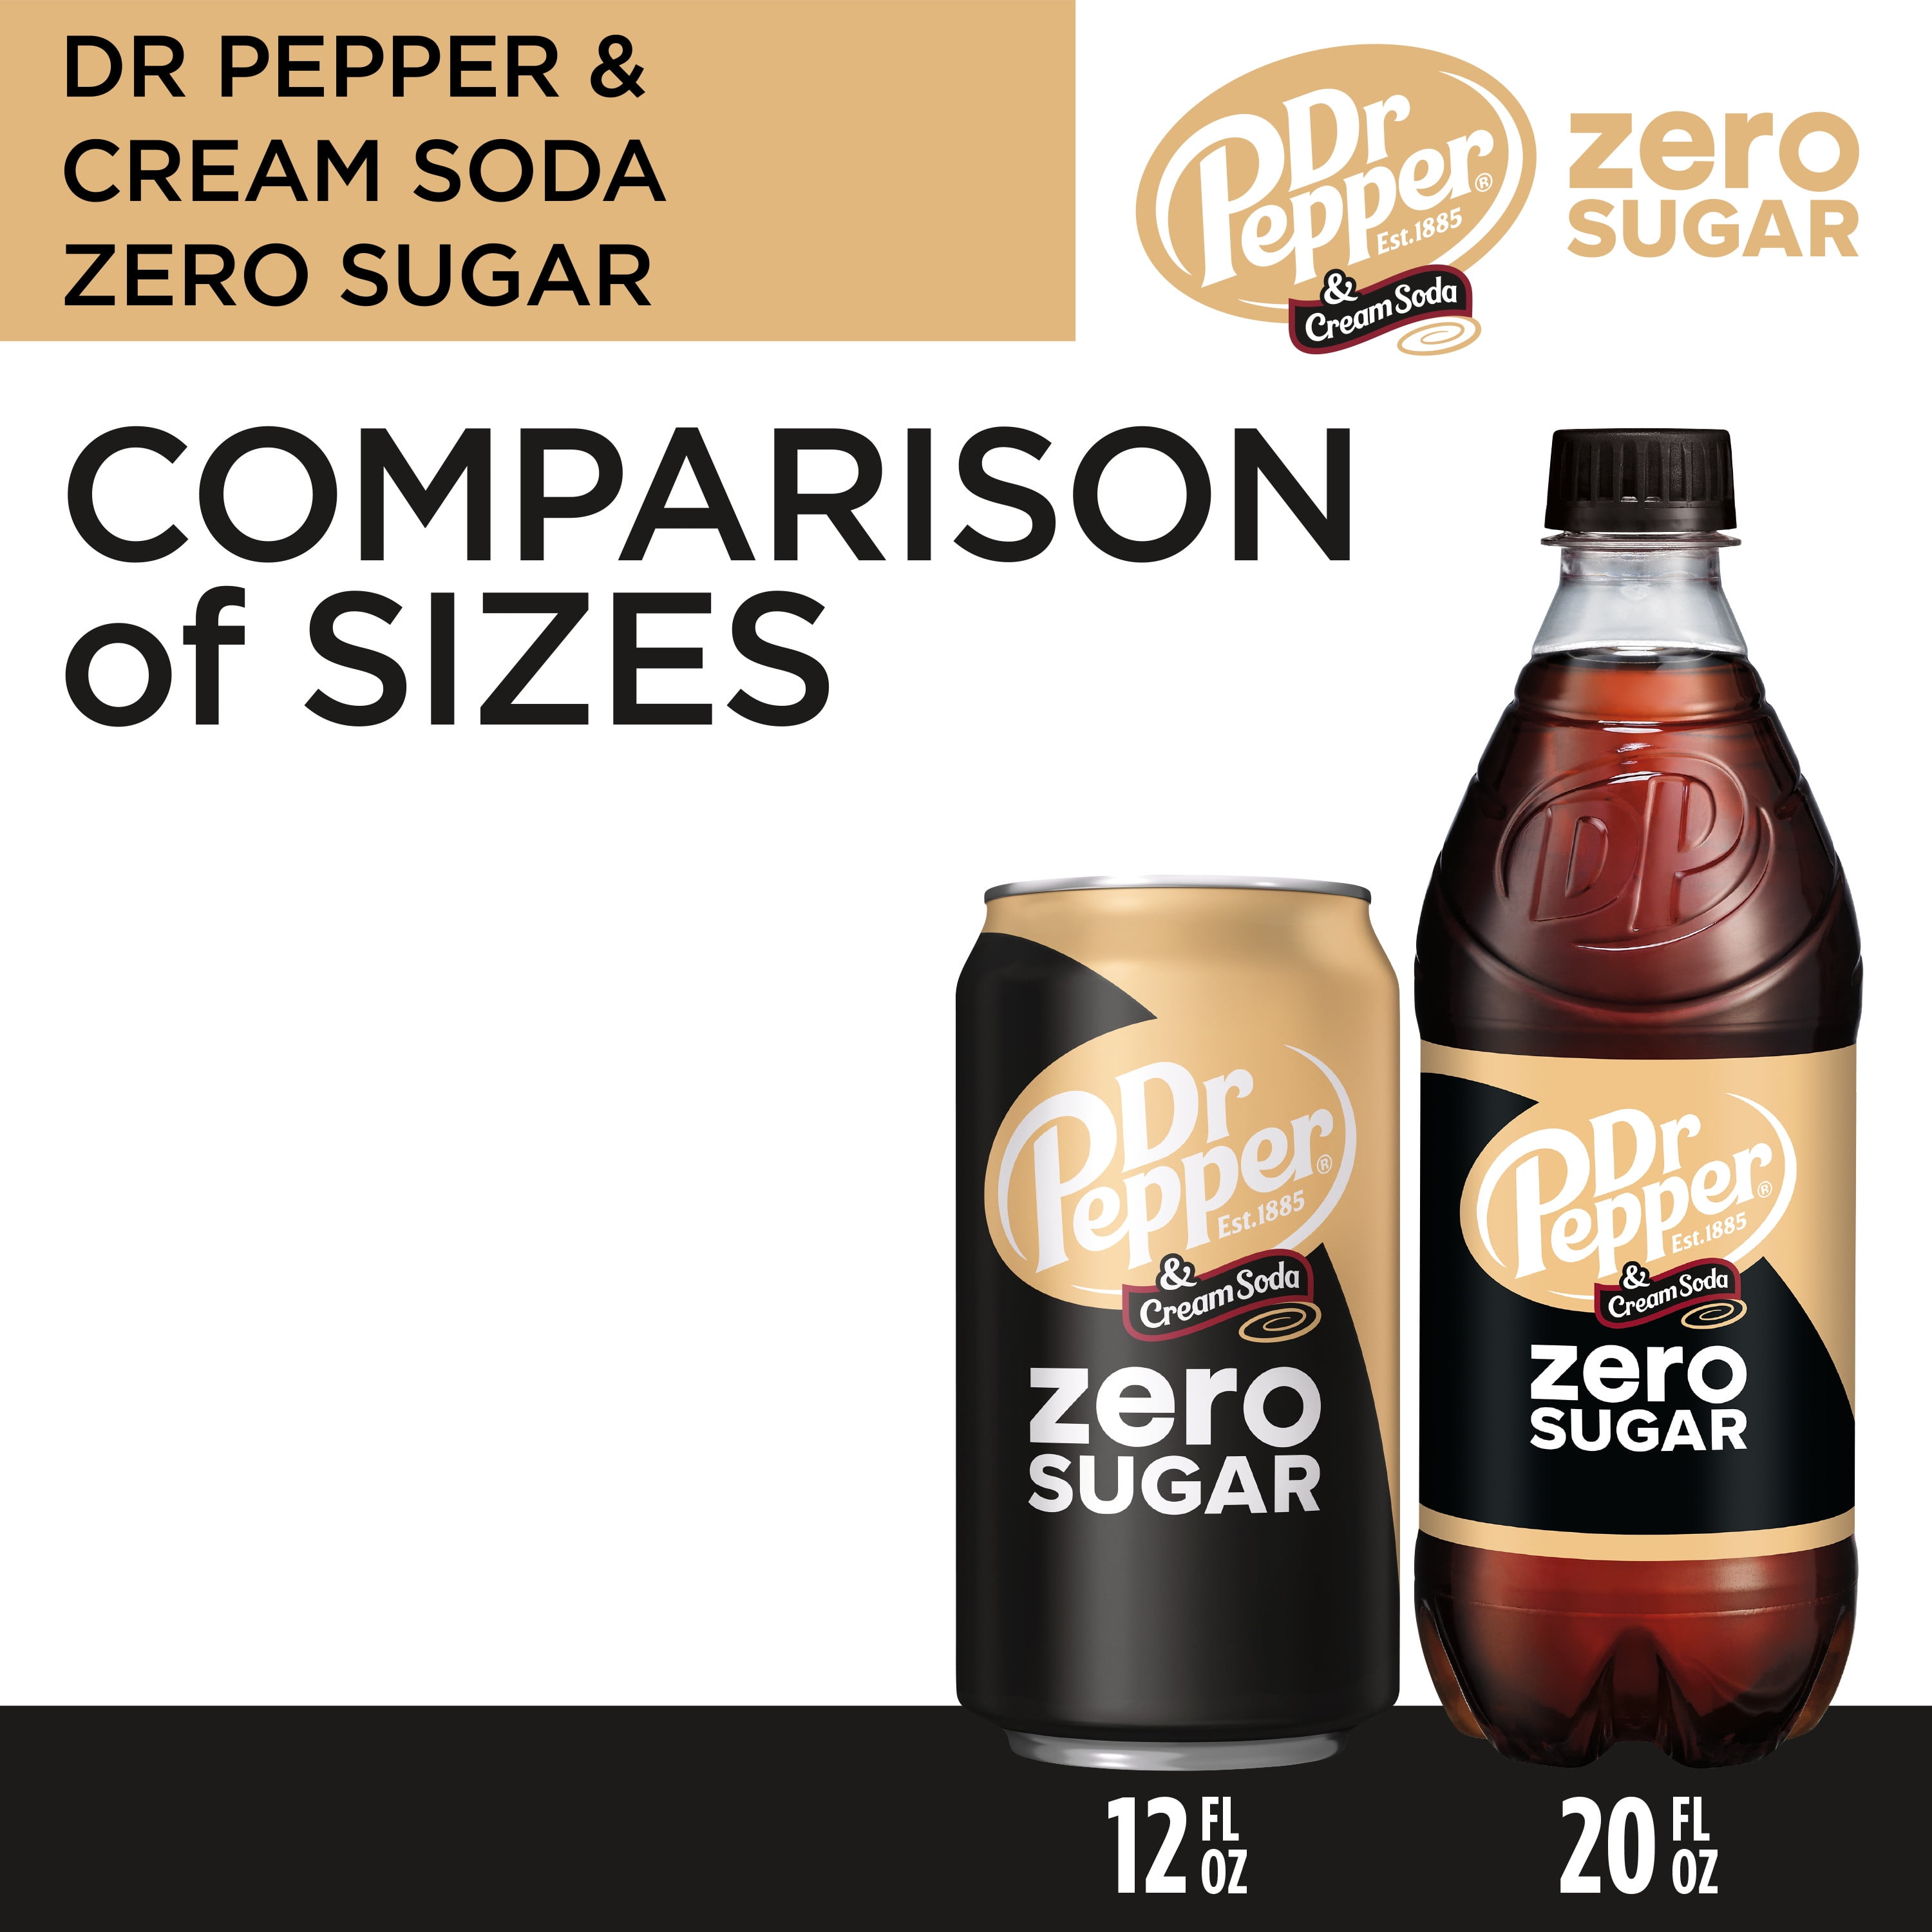 Крем сода никаких текст. Dr Pepper Cream Soda Zero. Доктор Пеппер Зеро. Пеппер Зеро 0,3. Dr Pepper Zero Sugar.